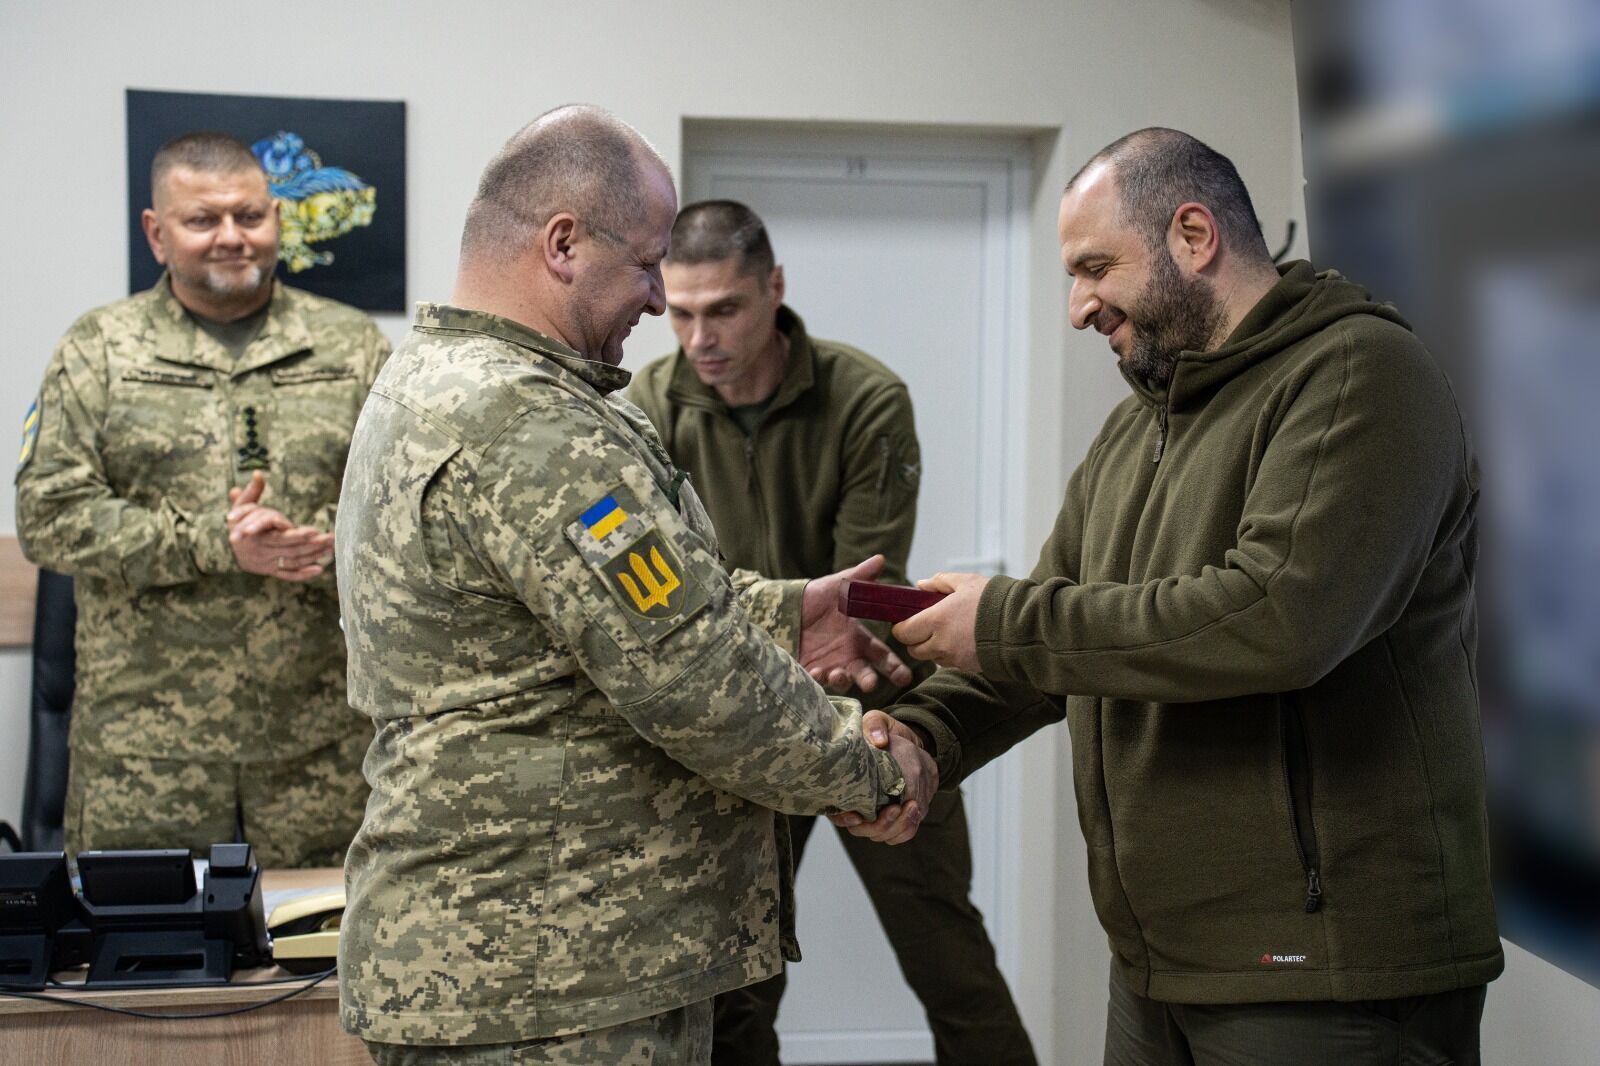 Załużny i Umerow wręczyli nagrody żołnierzom Sił Zbrojnych Ukrainy. Zdjęcie.